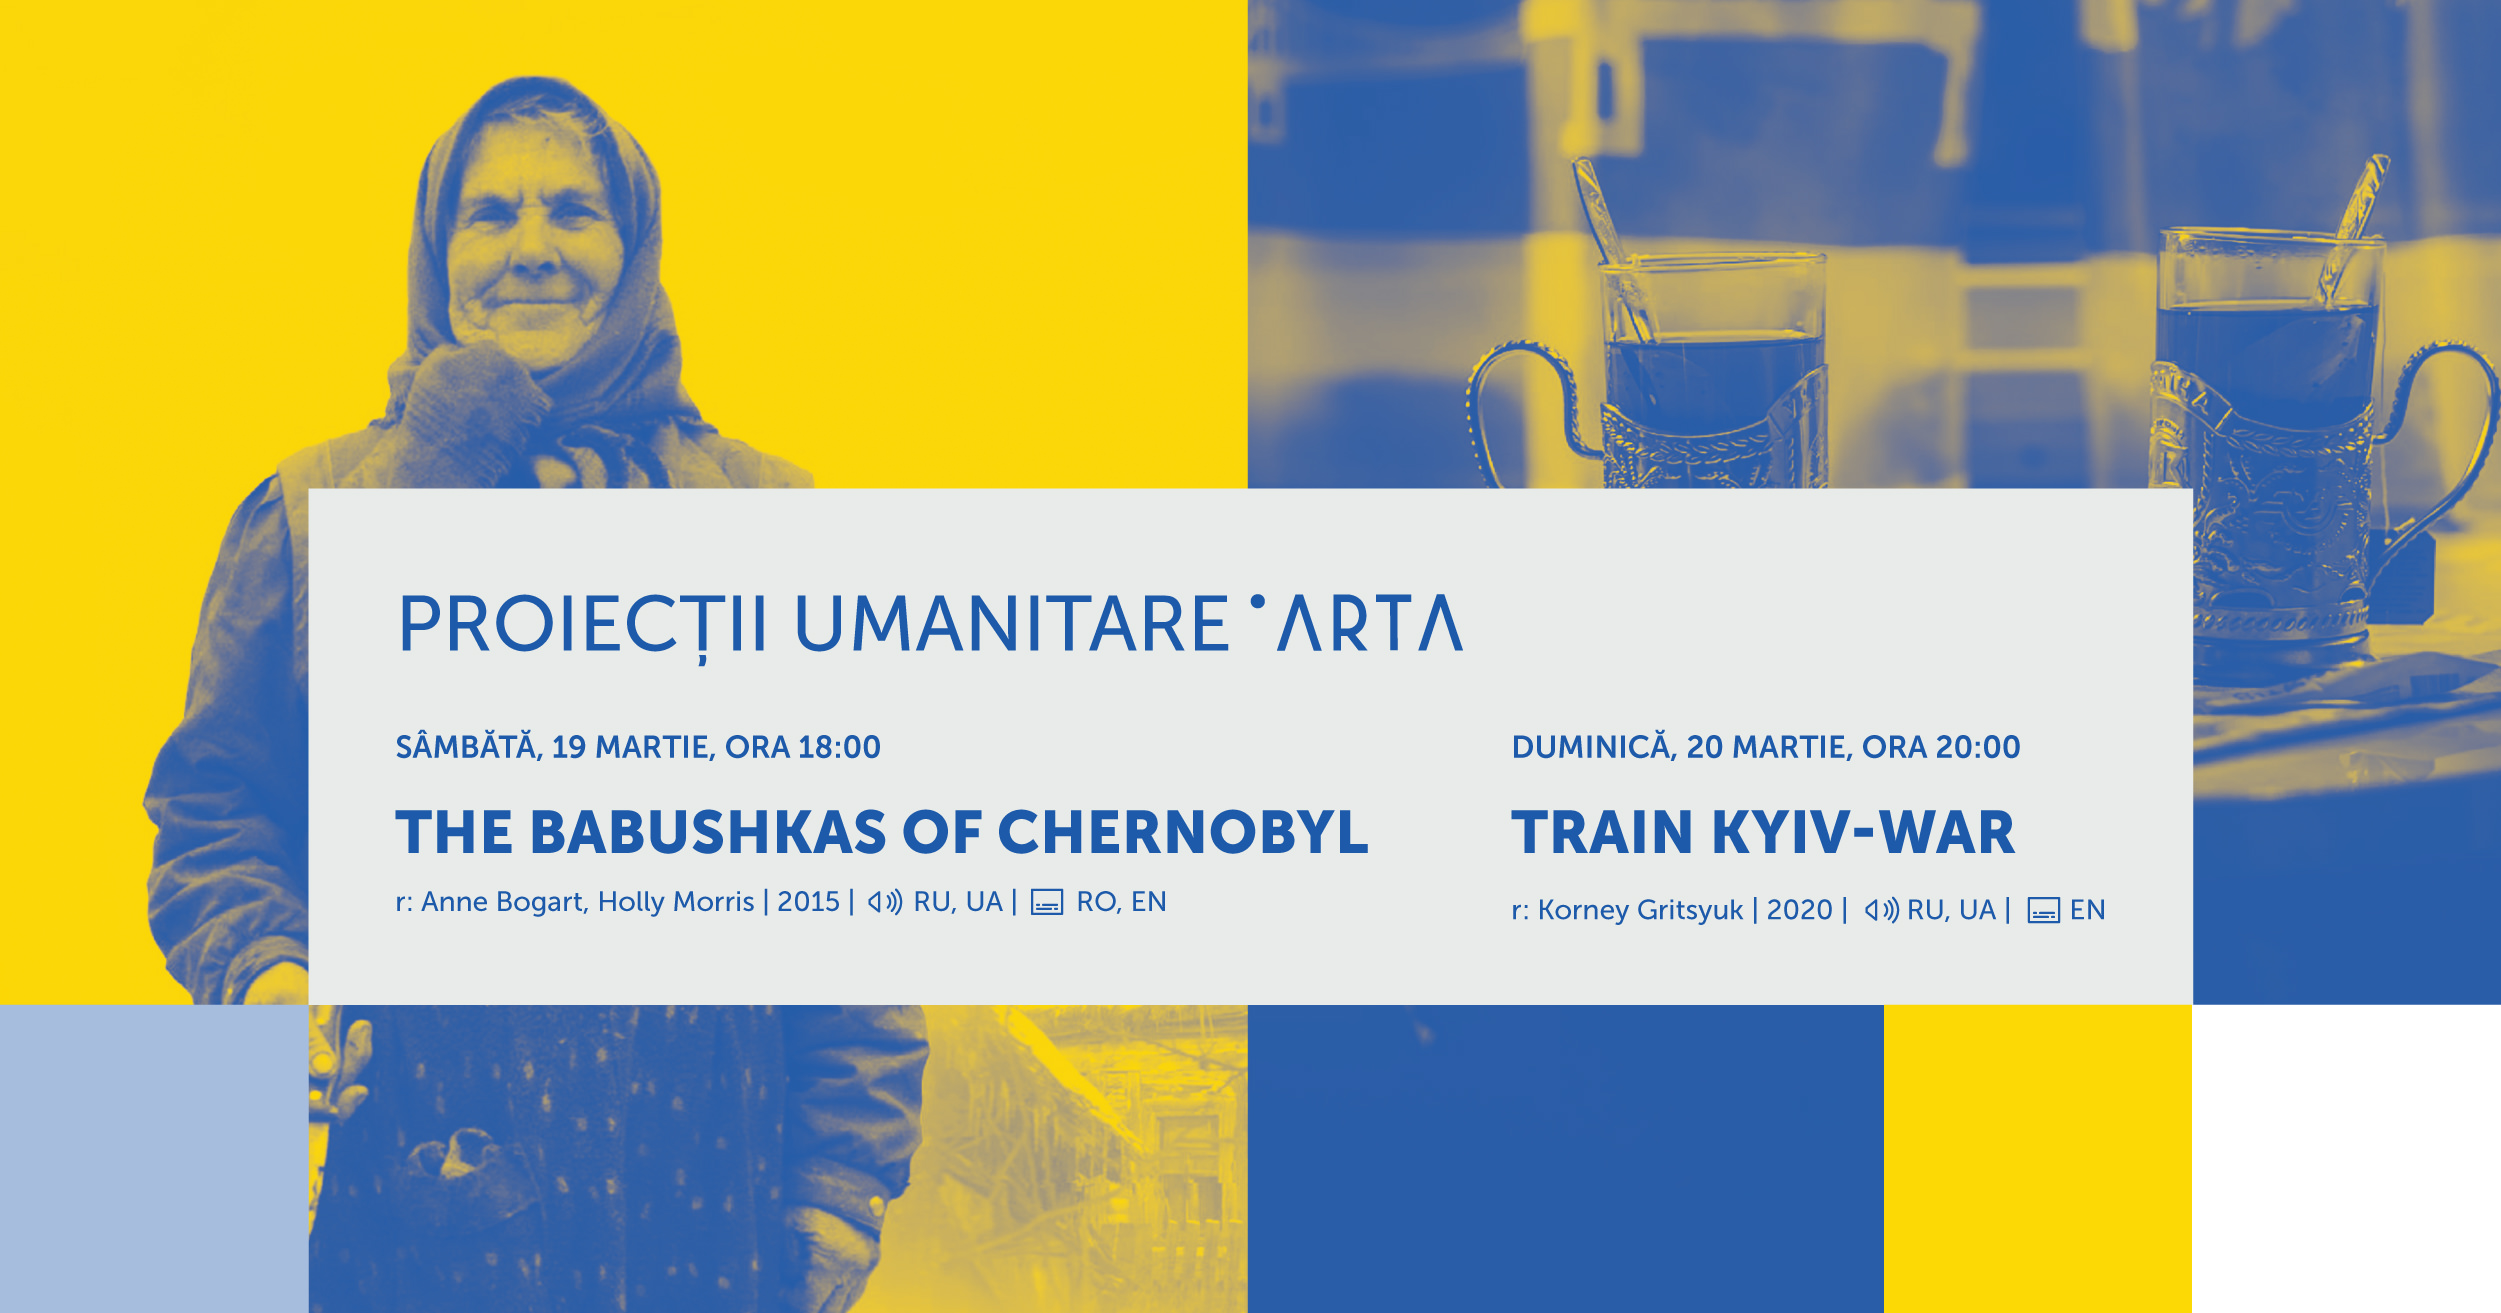 Proiecții umanitare de film la Cinema ARTA în sprijinul oamenilor din Ucraina afectați de război